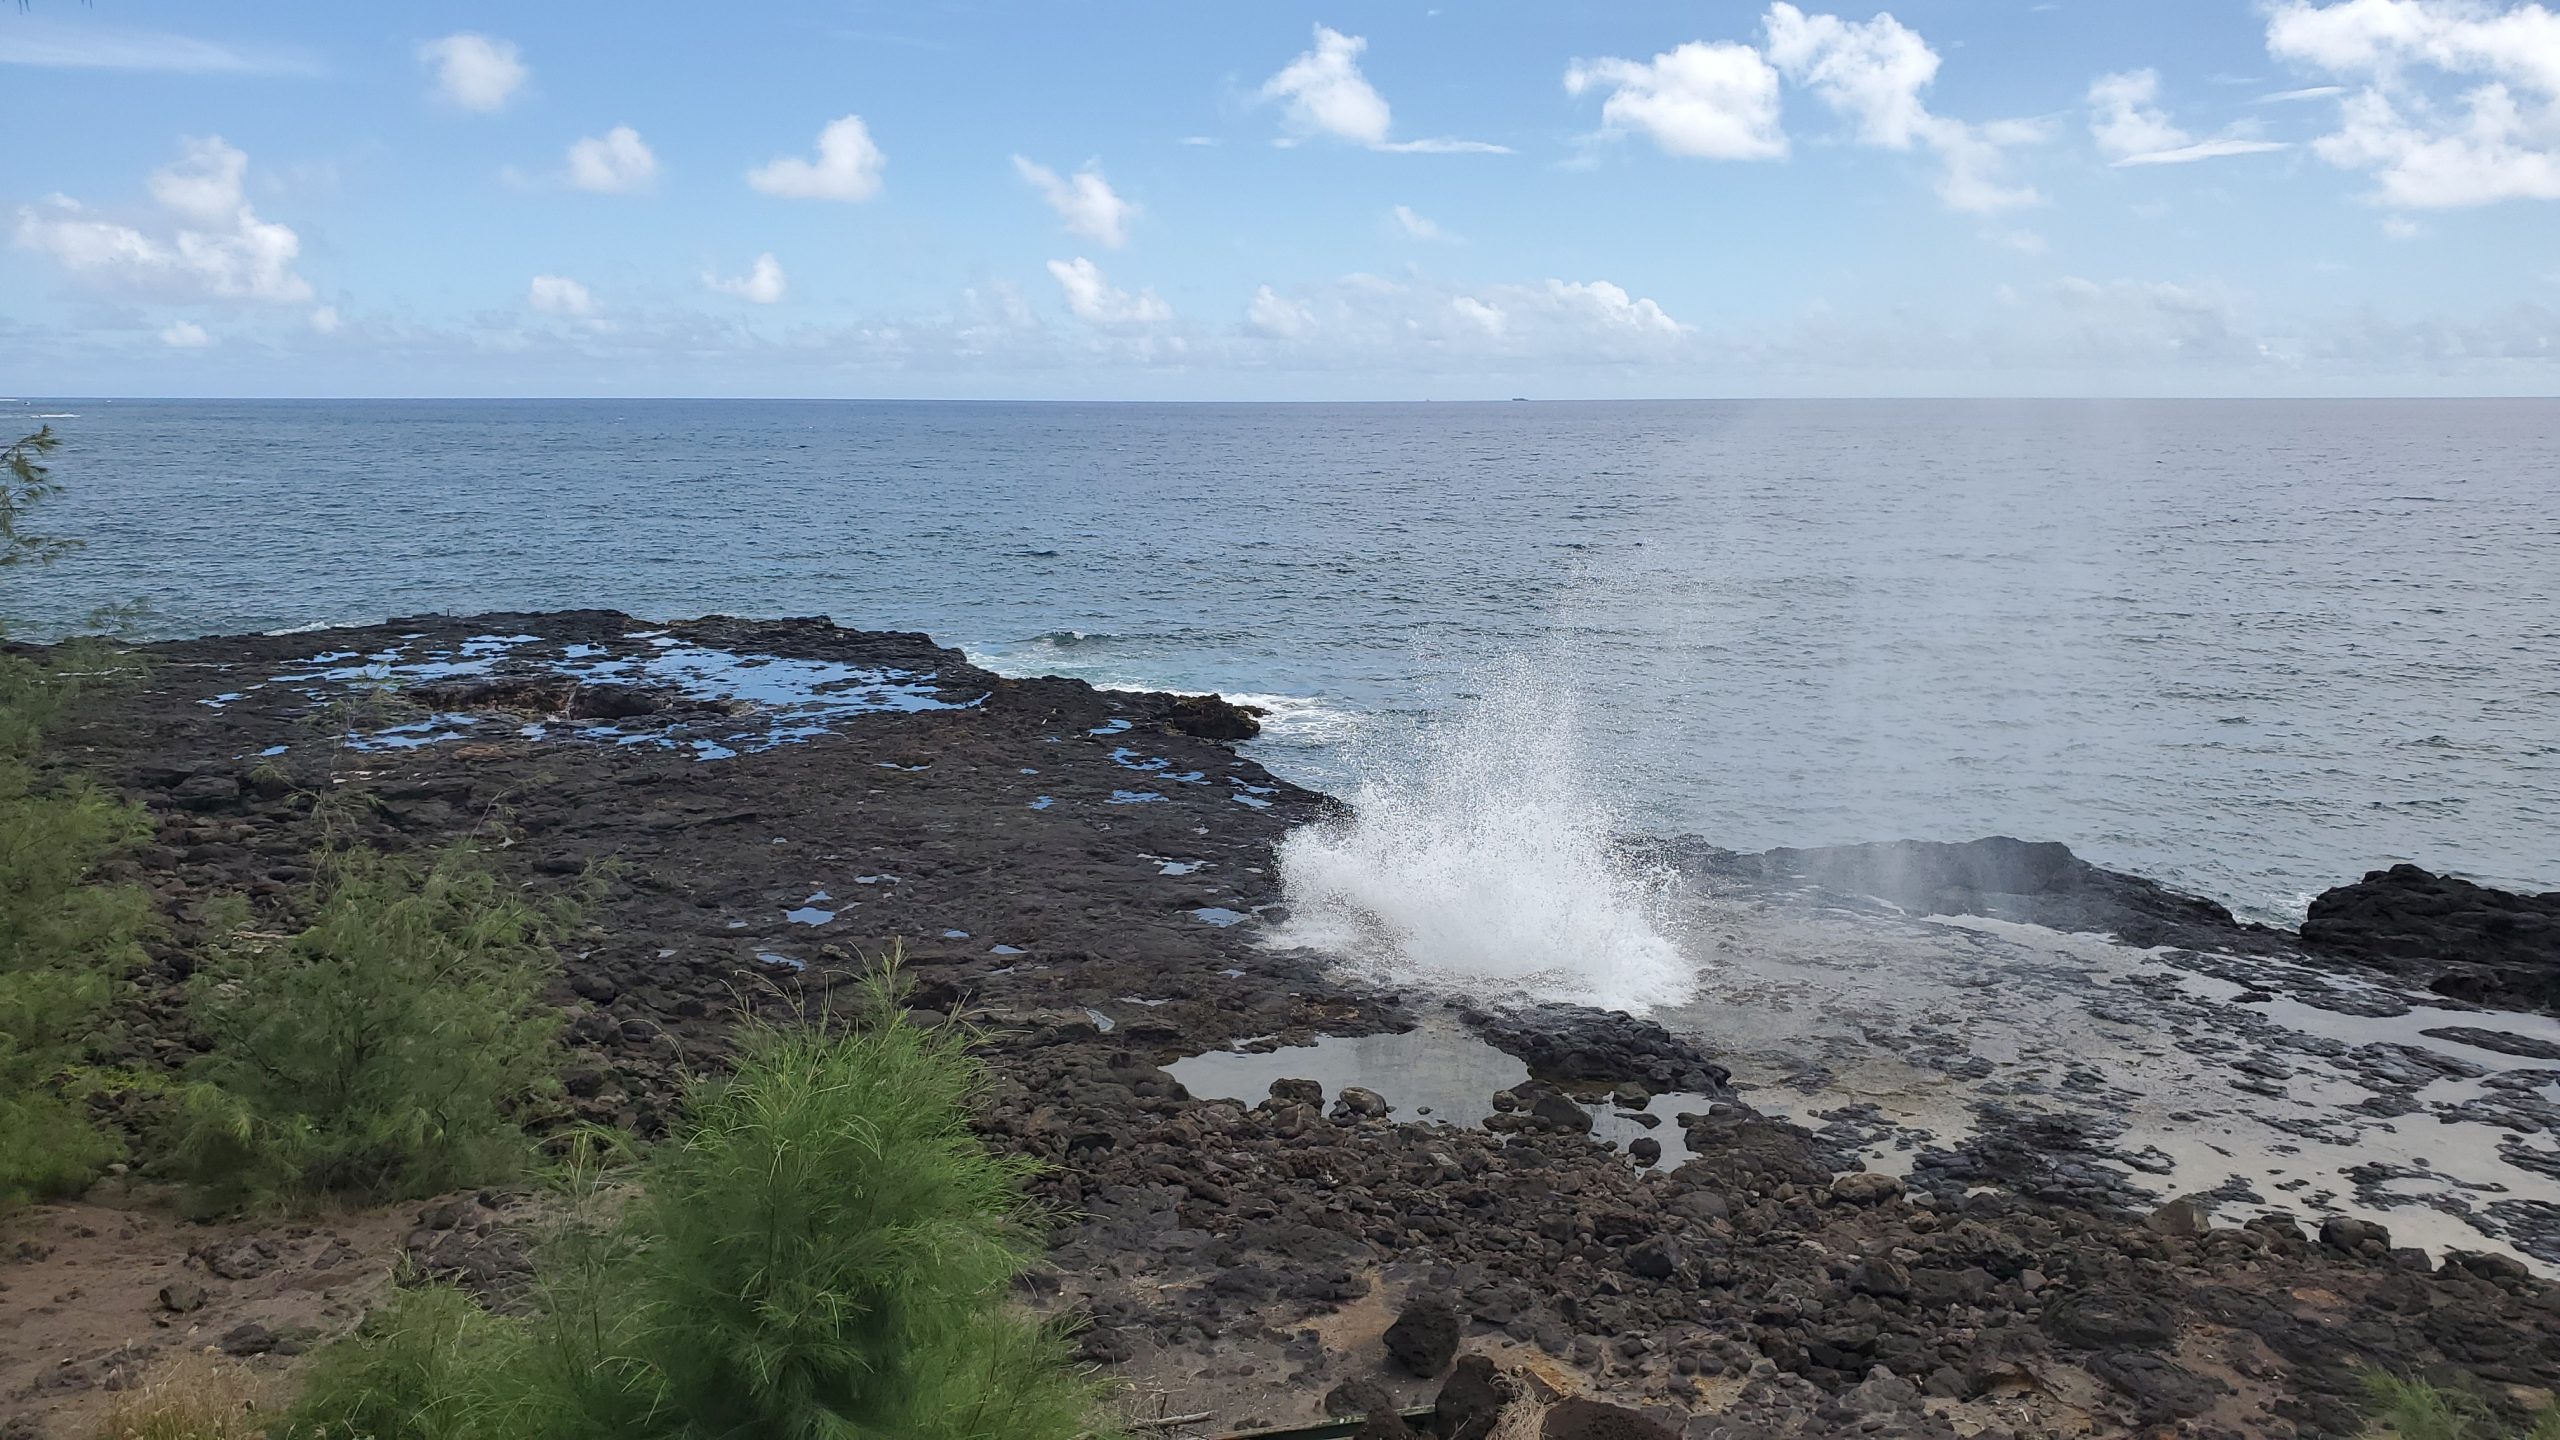 Spouting Horn in Kauai